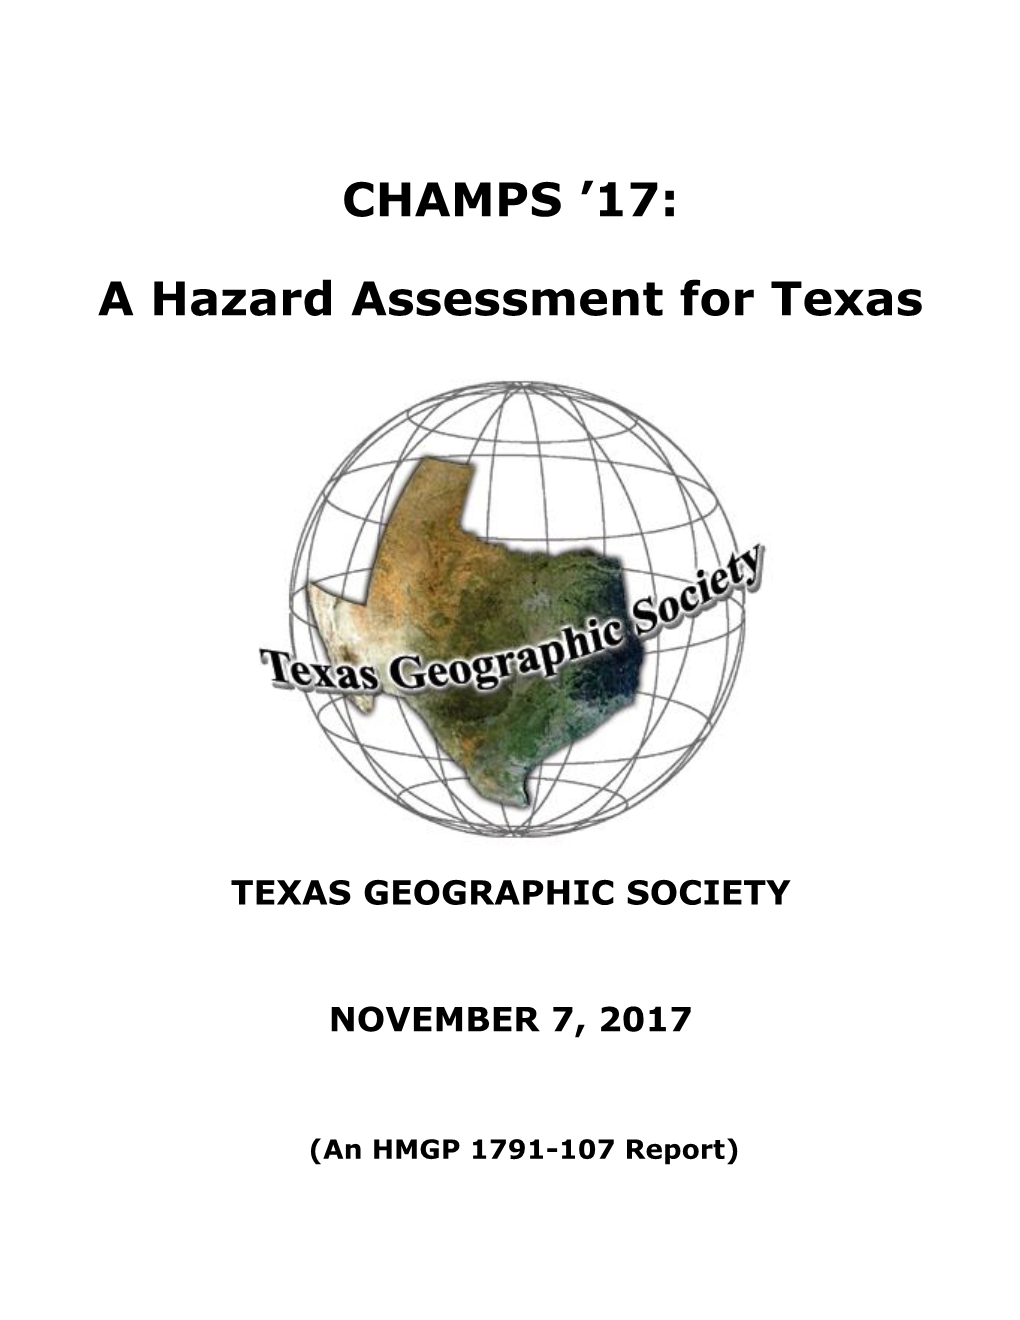 17: a Hazard Assessment for Texas